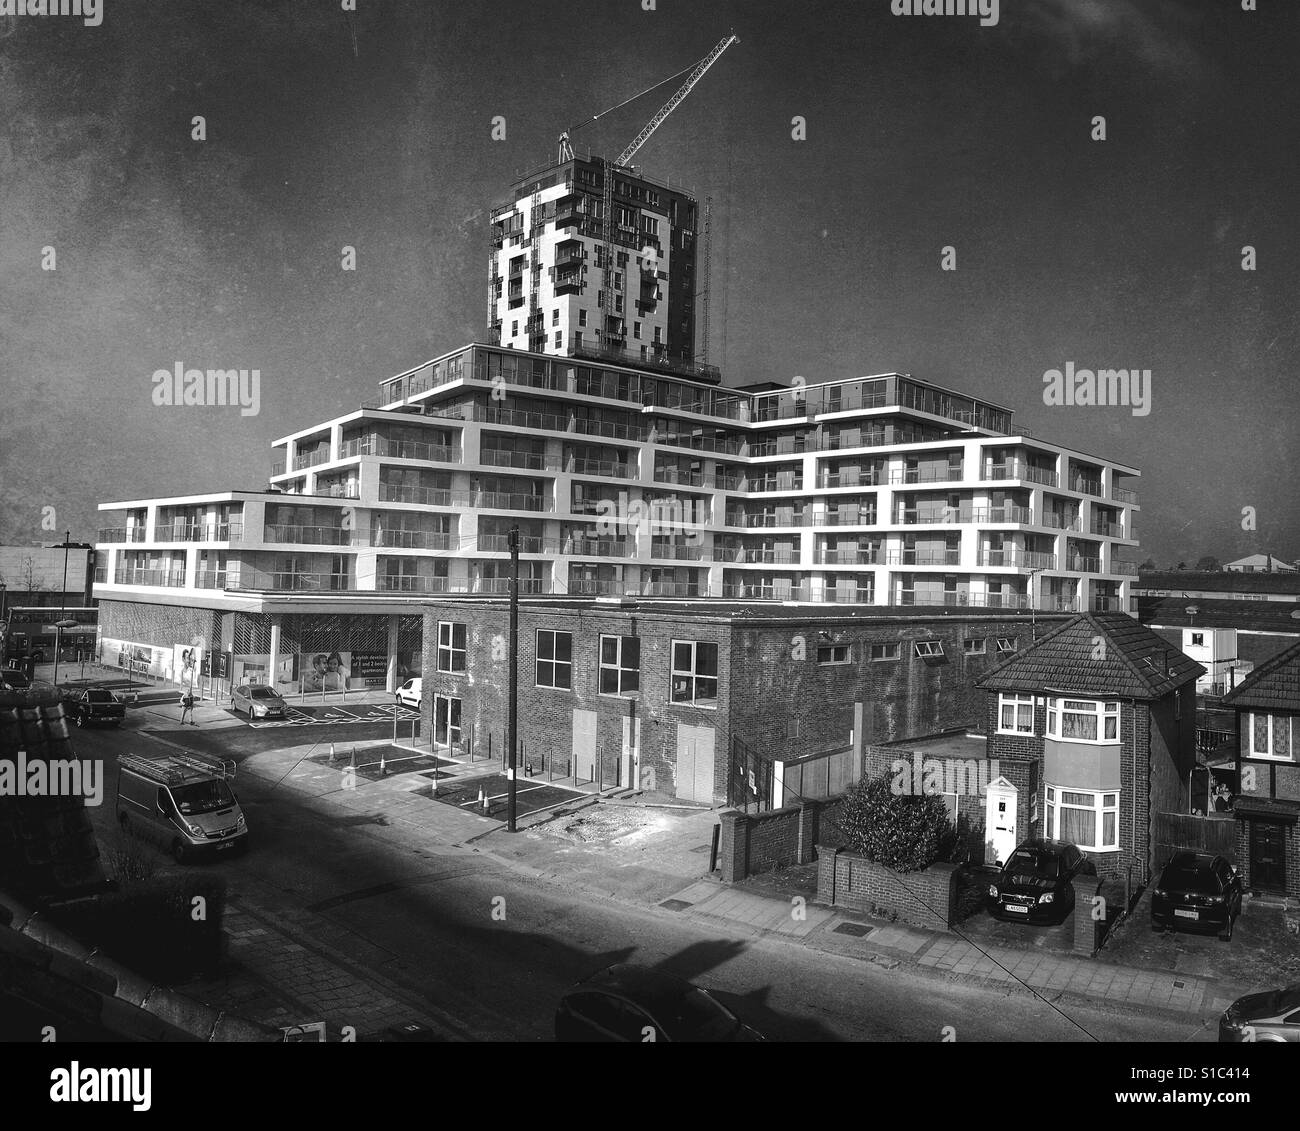 Schwarz-weiß Foto von Mar Haus, eine Entwicklung des neuen Gehäuses und Gebäude im Bau in Colindale, nordwestlich von London. Der Bau ist Teil der Colindale Regeneration Projekt. Stockfoto